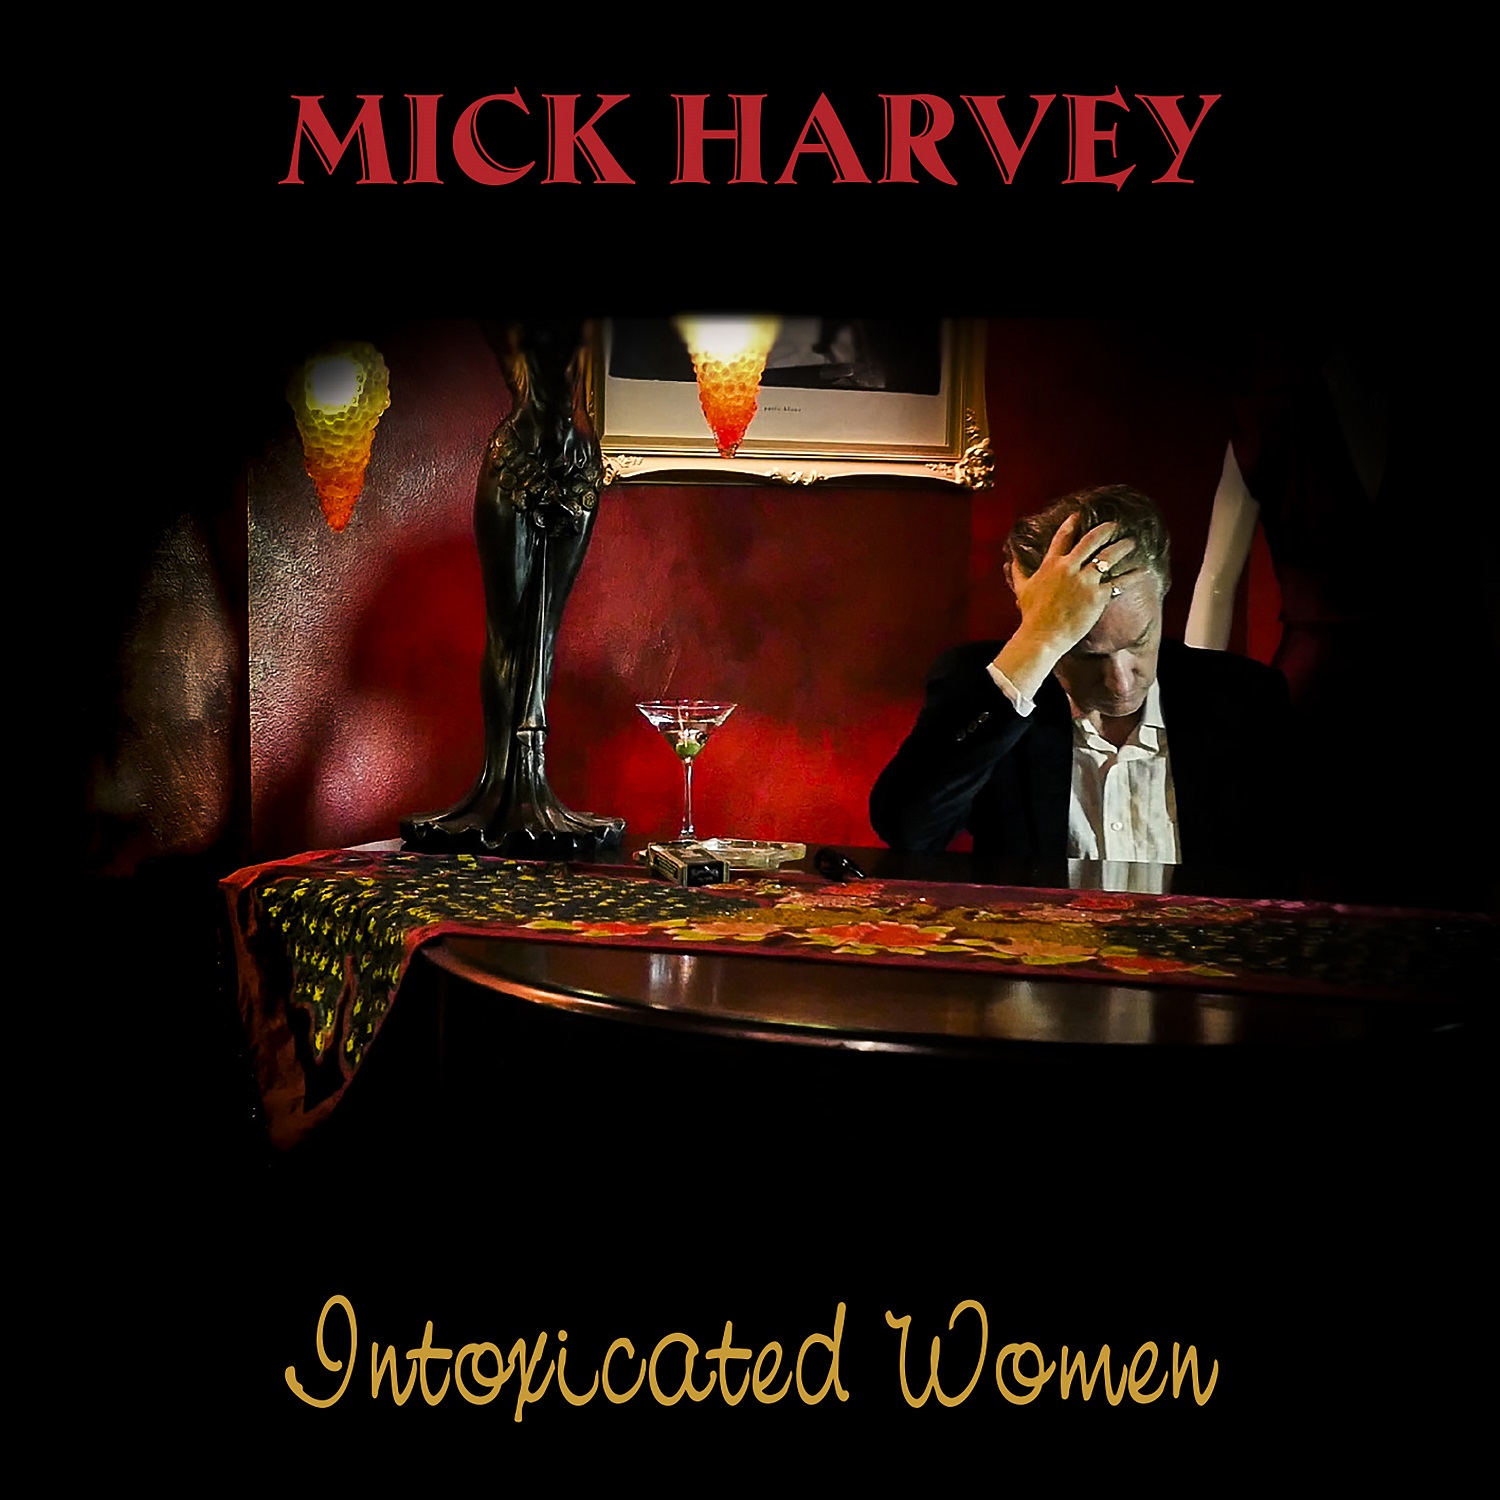 Mick Harvey, „Intoxicated Woman” – okładka płyty (źródło: materiały prasowe wydawcy)